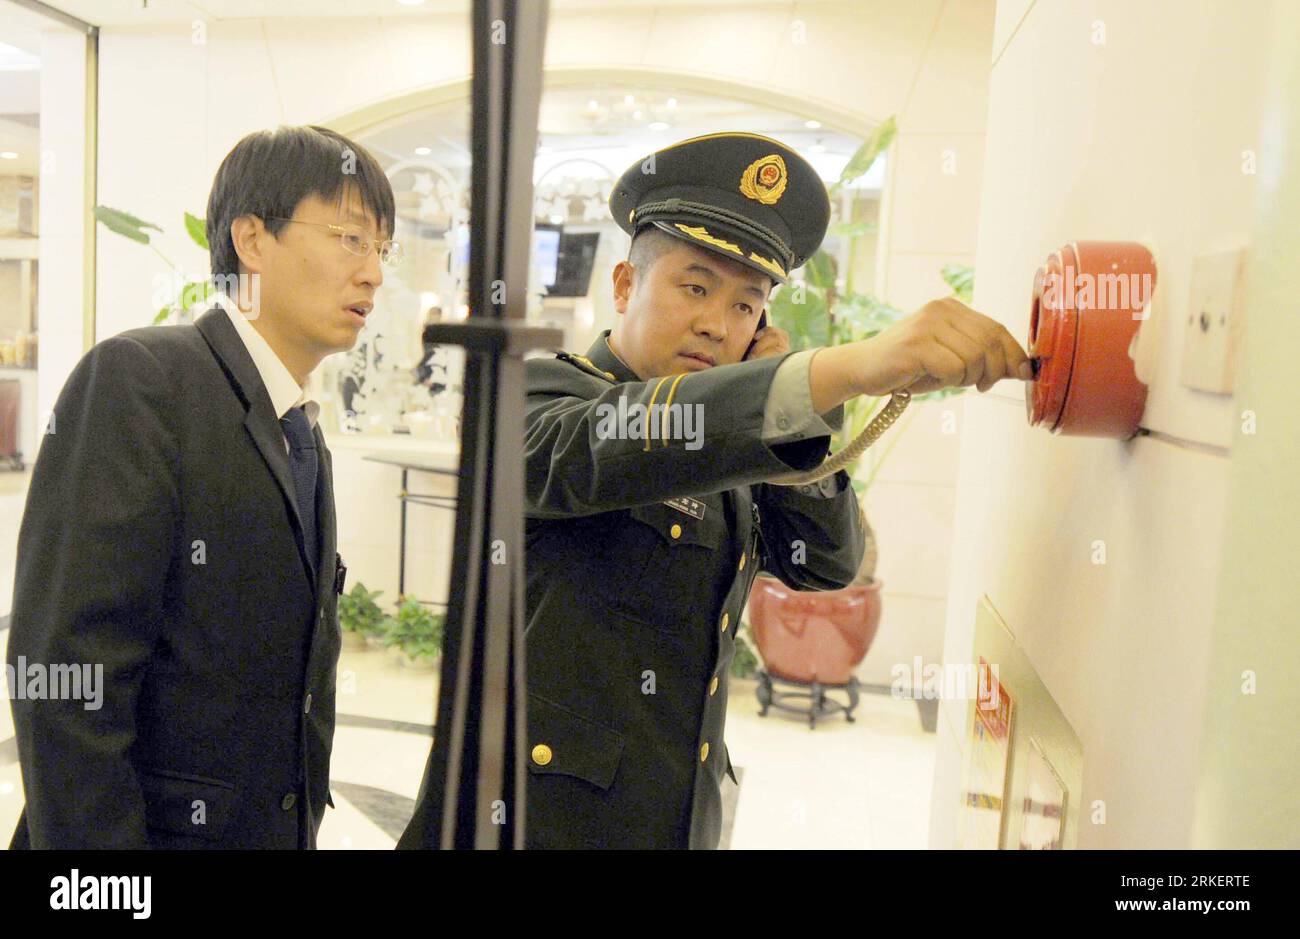 Bildnummer: 55287957 Datum: 25.04.2011 Copyright: imago/Xinhua (110425) -- PEKING, 25. April 2011 (Xinhua) -- Ein Mitglied einer Feuerwehr führt eine Überprüfung der Feuertelefonanlage während einer Sonderinspektion auf einem einkaufsplatz in Peking, Hauptstadt von China, am 25. April 2011 durch. Die Brandbekämpfungsbehörden führten am Montag eine Sonderinspektion durch, um Brandgefahren in ganz Peking zu beseitigen. Siebzehn Menschen wurden getötet und 25 weitere wurden am Montagmorgen in einem südlichen Pekinger Vorort bei dem tödlichsten Brand verletzt, den die chinesische Hauptstadt seit neun Jahren erlebt hat. (Xinhua/Li Wen) (ljh) CHINA-PEKING-BRANDSCHUTZINSPEKTION Stockfoto